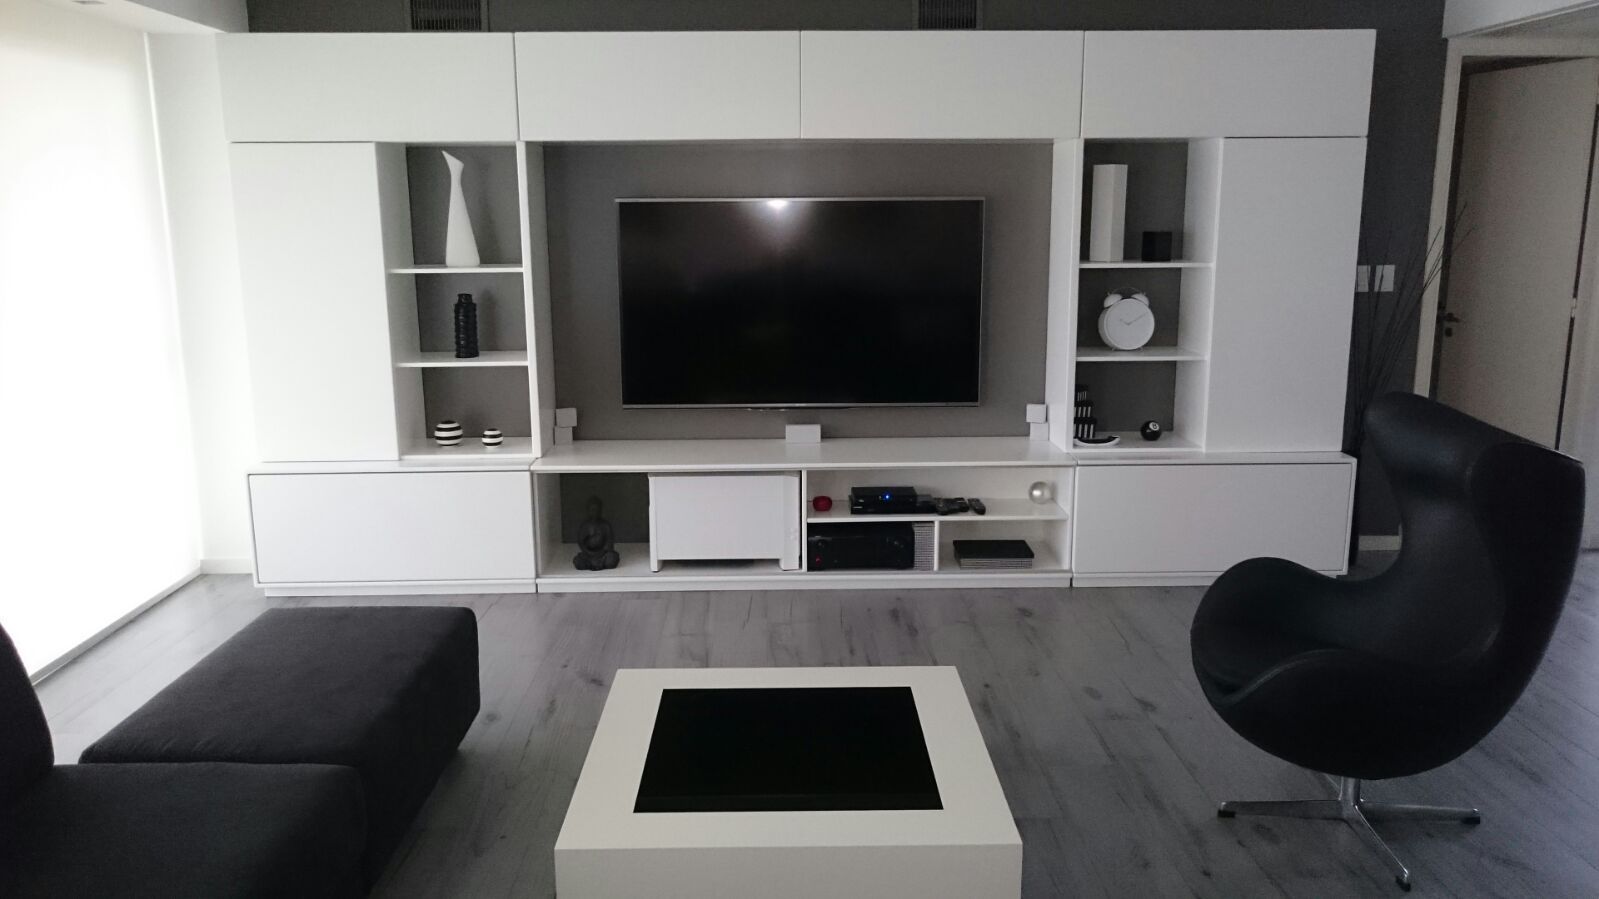 Entre el blanco y el negro los grises se hacen presentes en este living moderno. dymmuebles Salas modernas Estanterías